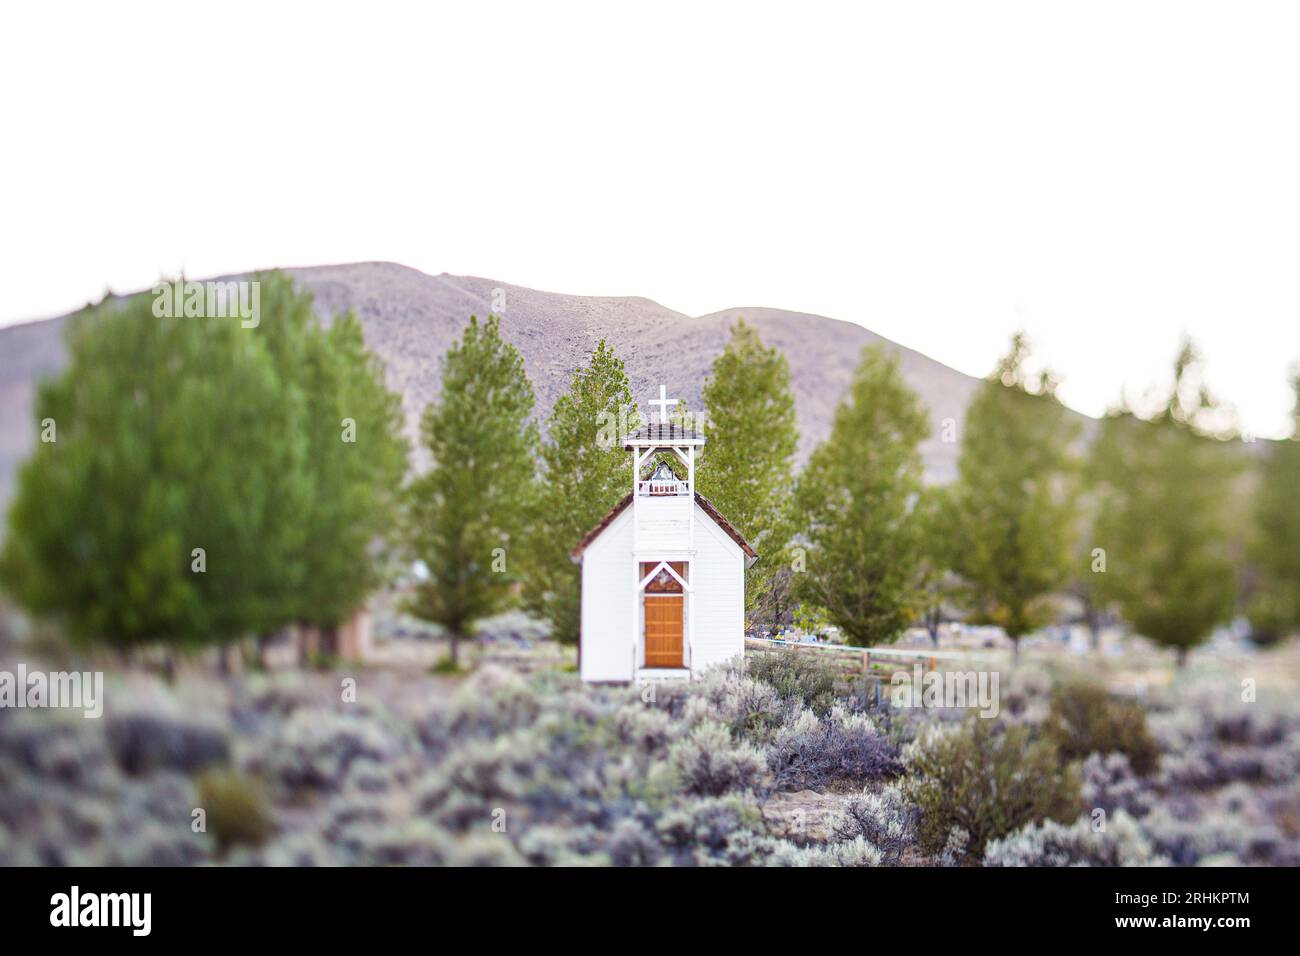 Fotografia di una piccola chiesa cattolica di campagna a Doyle, CALIFORNIA, viaggio in paesaggi con tecniche di fotografia inclinata Foto Stock